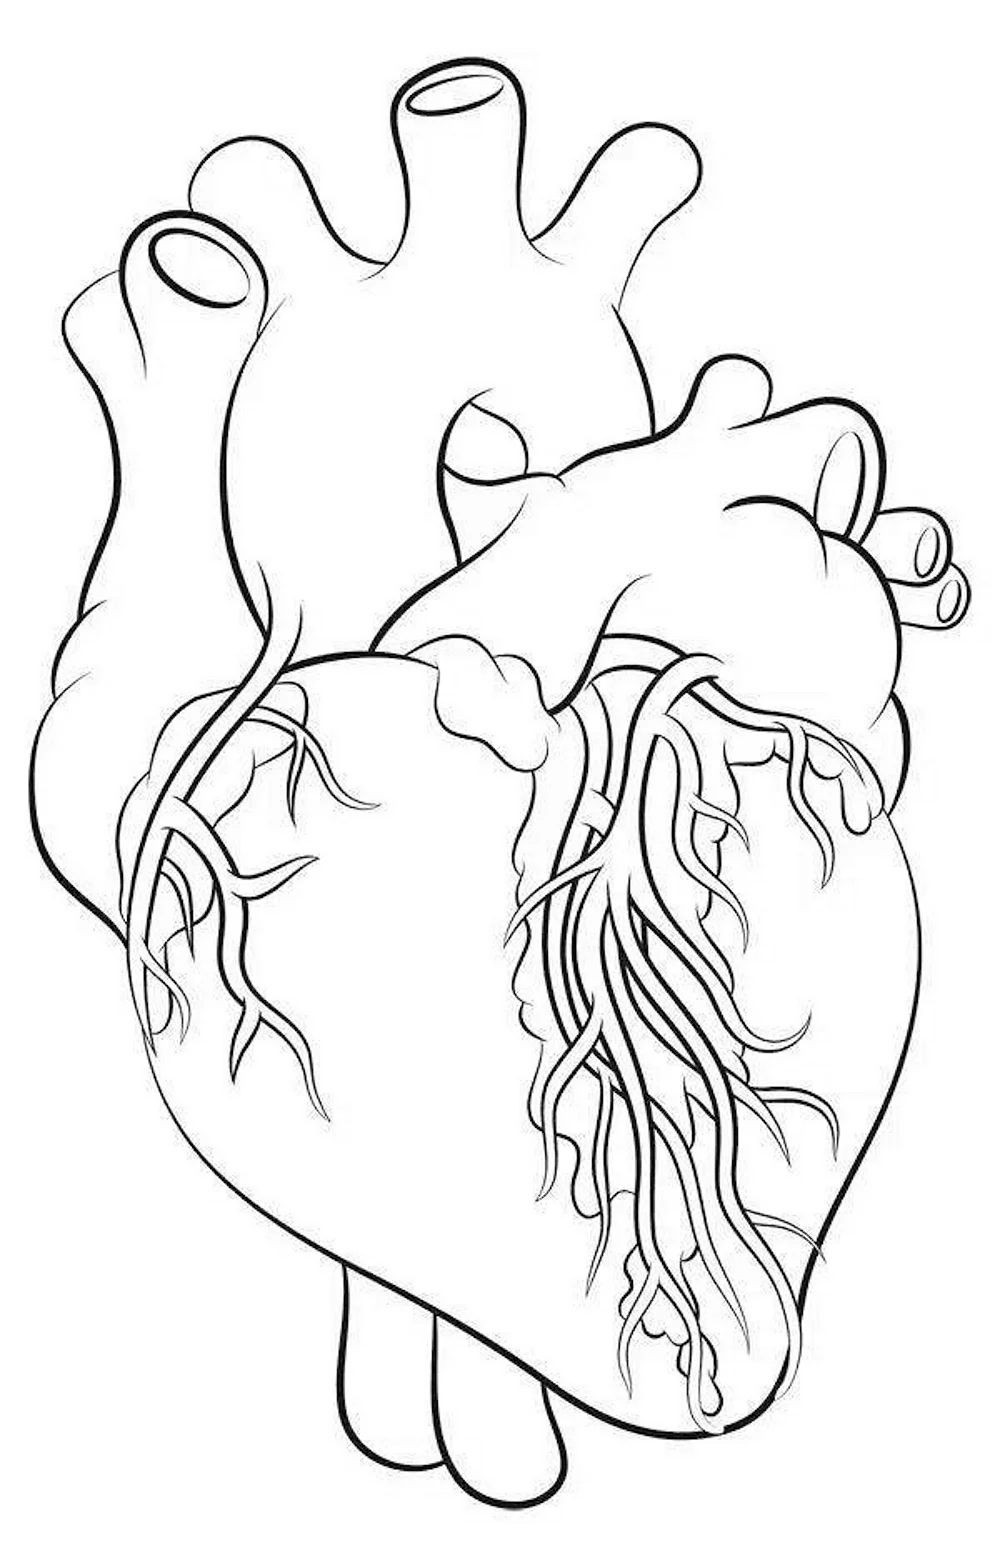 Нарисовать сердце человека